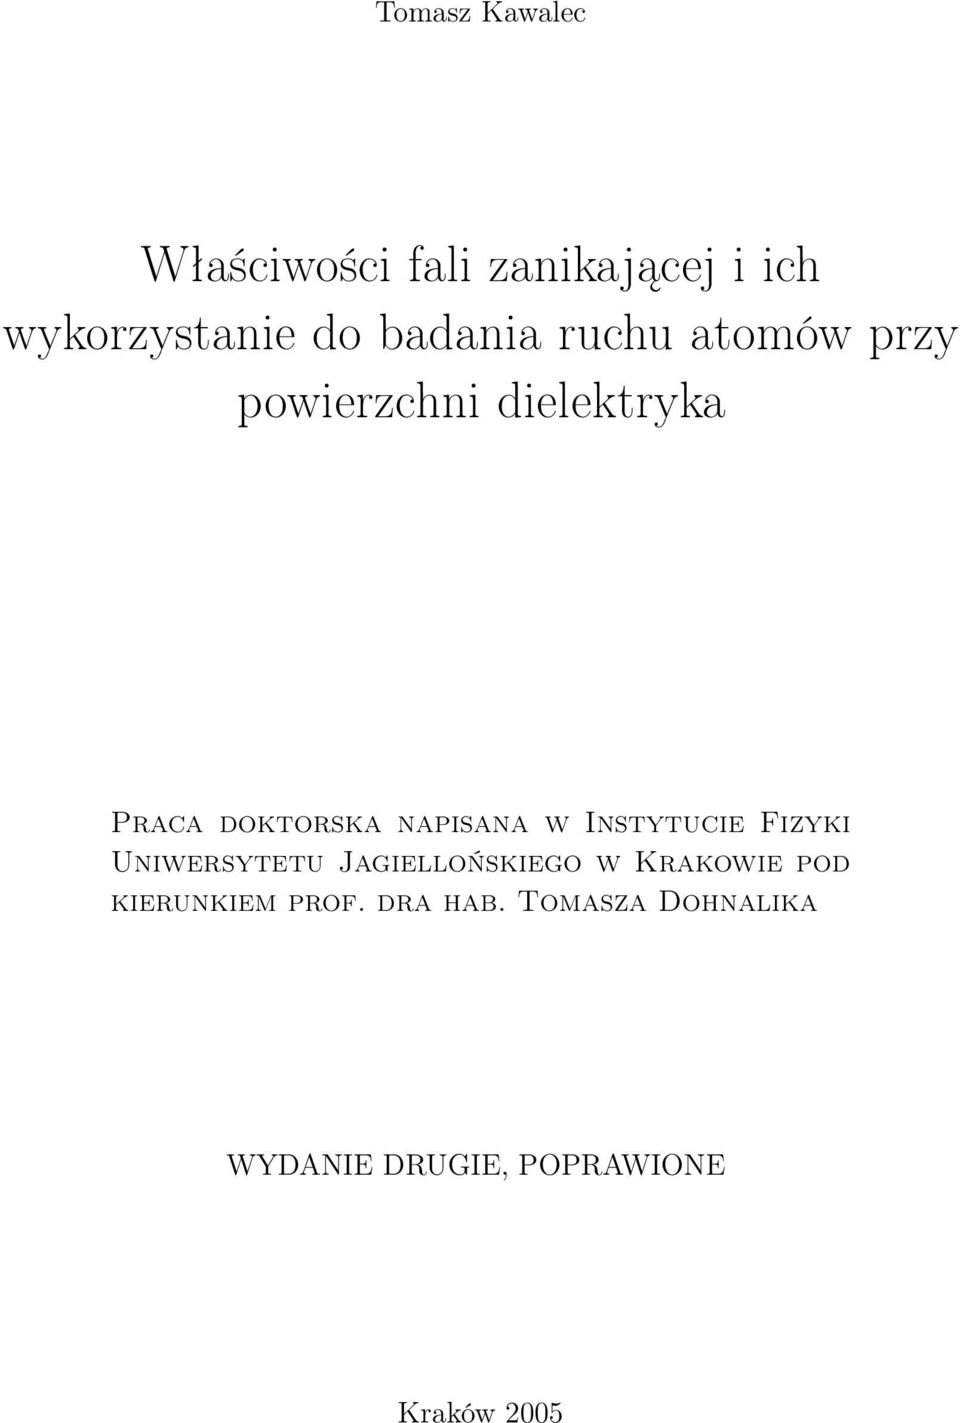 napisana w Instytucie Fizyki Uniwersytetu Jagiellońskiego w Krakowie